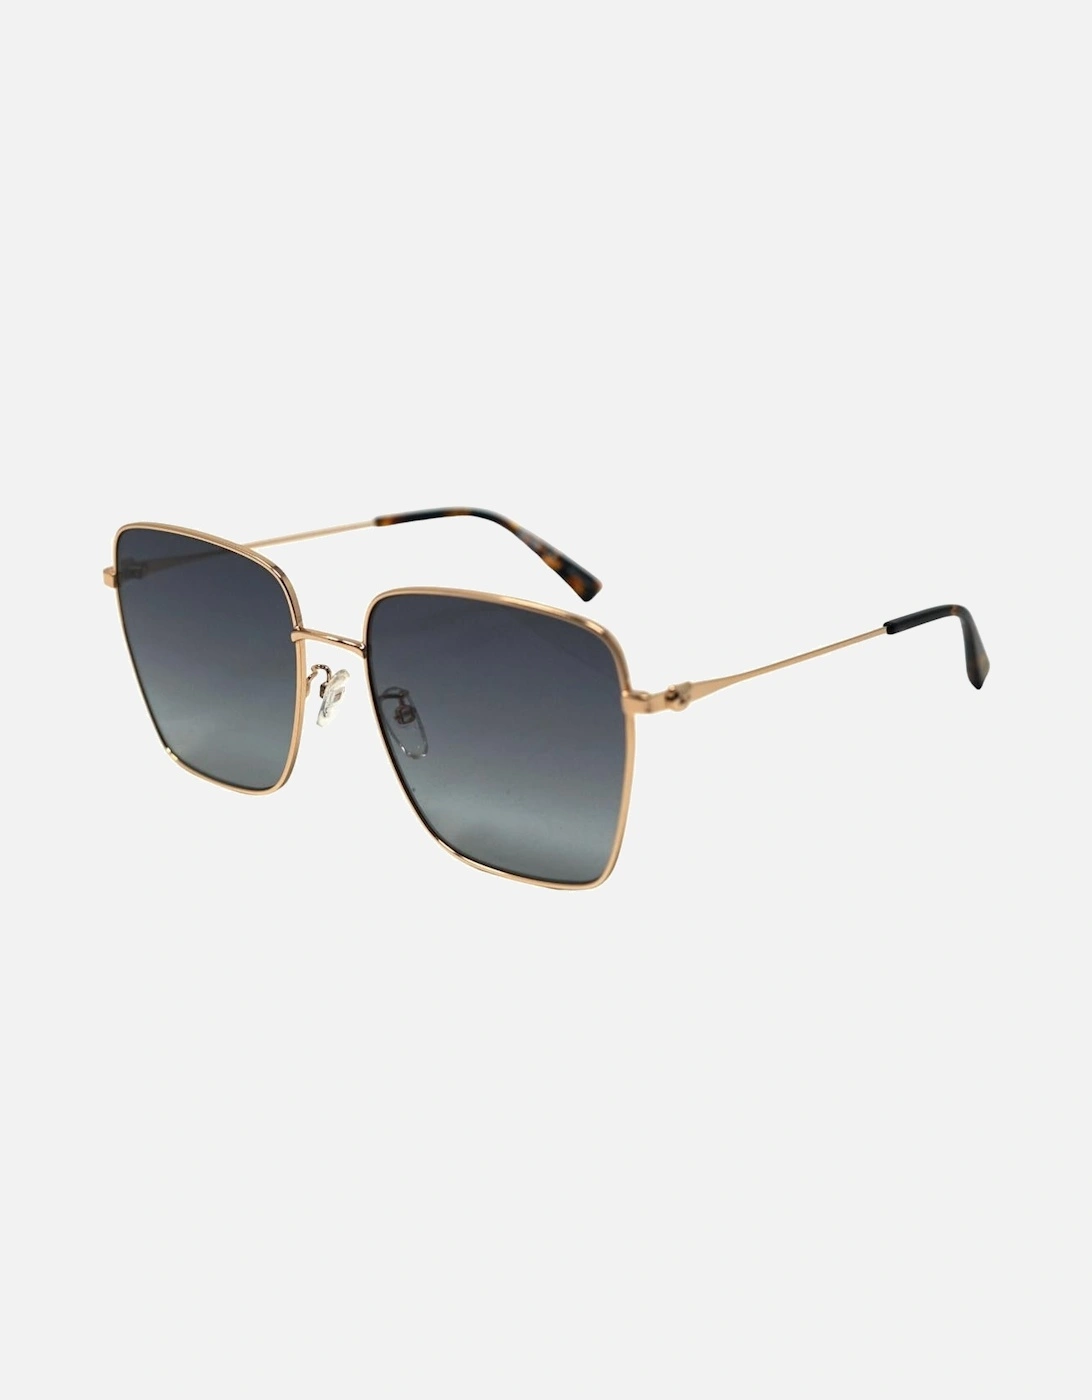 MOS072/G/S J5G 9O Gold Sunglasses